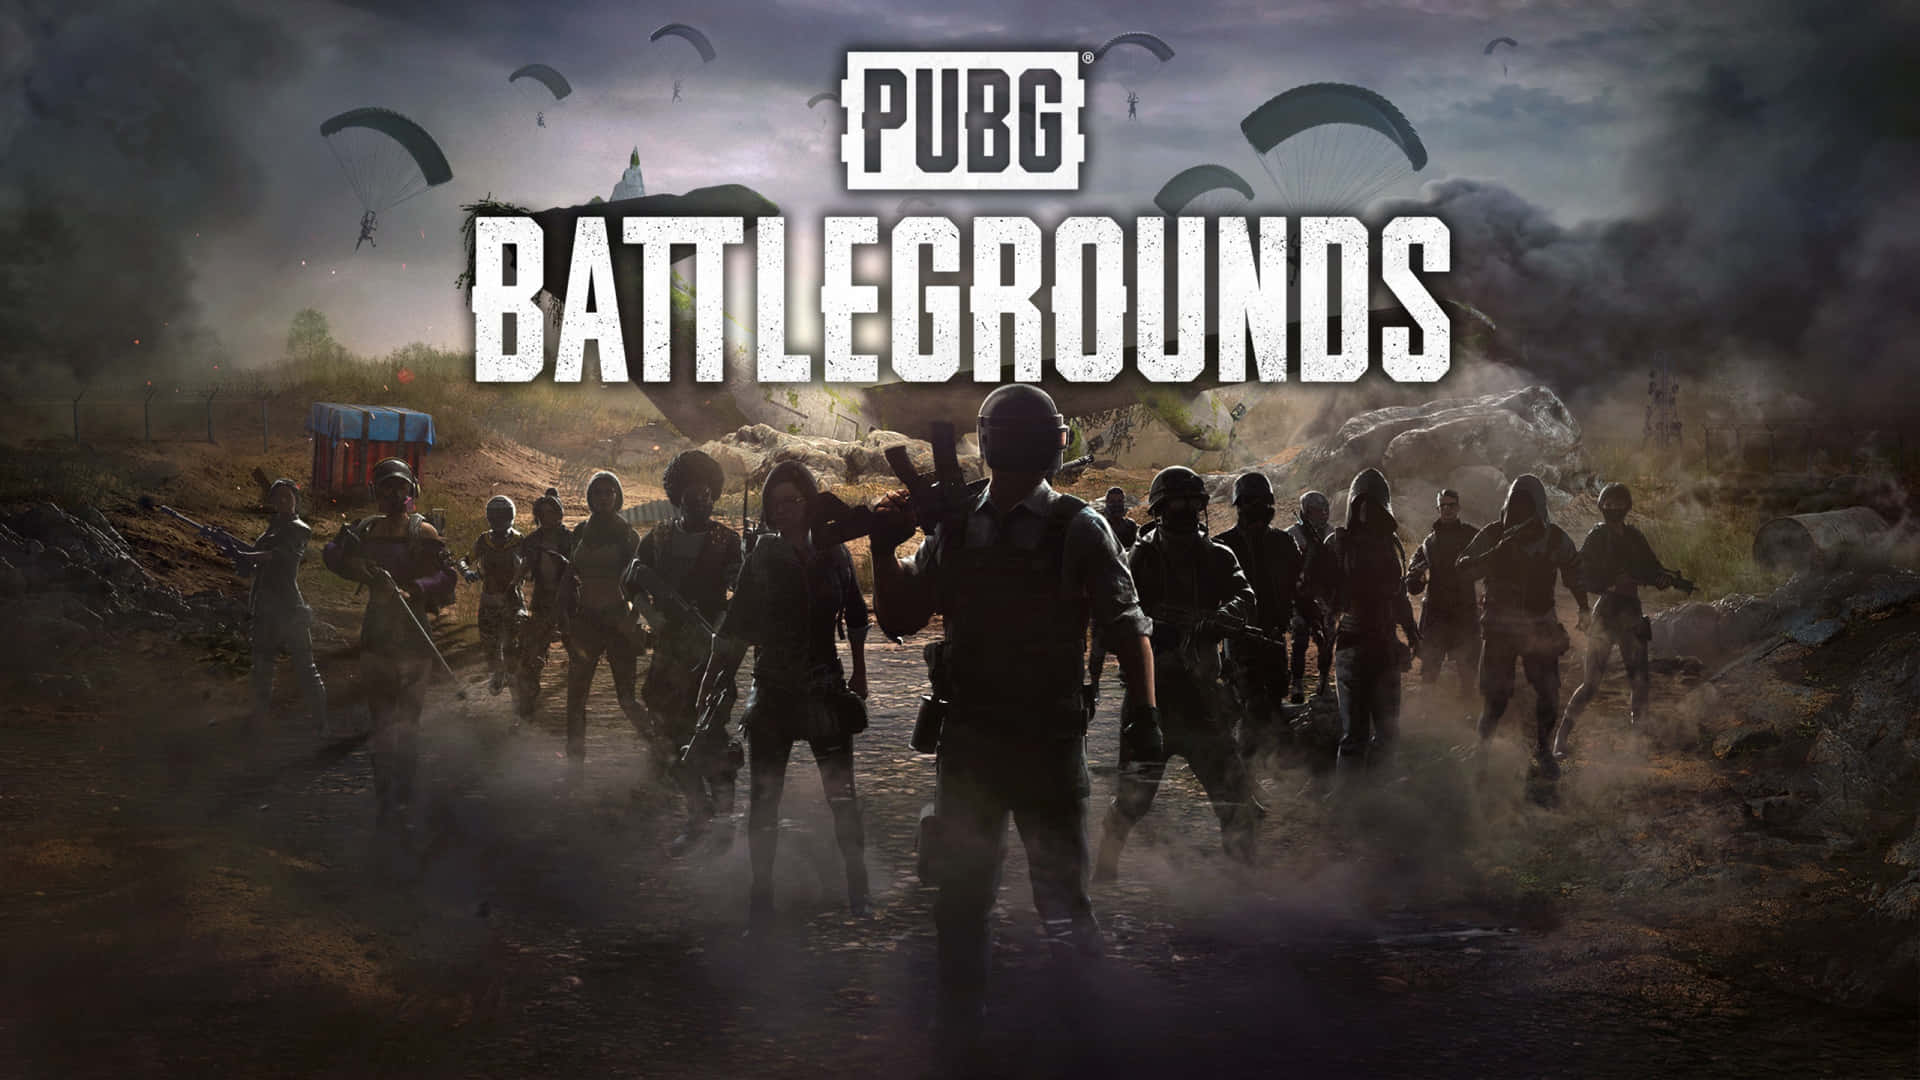 Logode Pubg Battlegrounds Con Un Grupo De Personas Fondo de pantalla